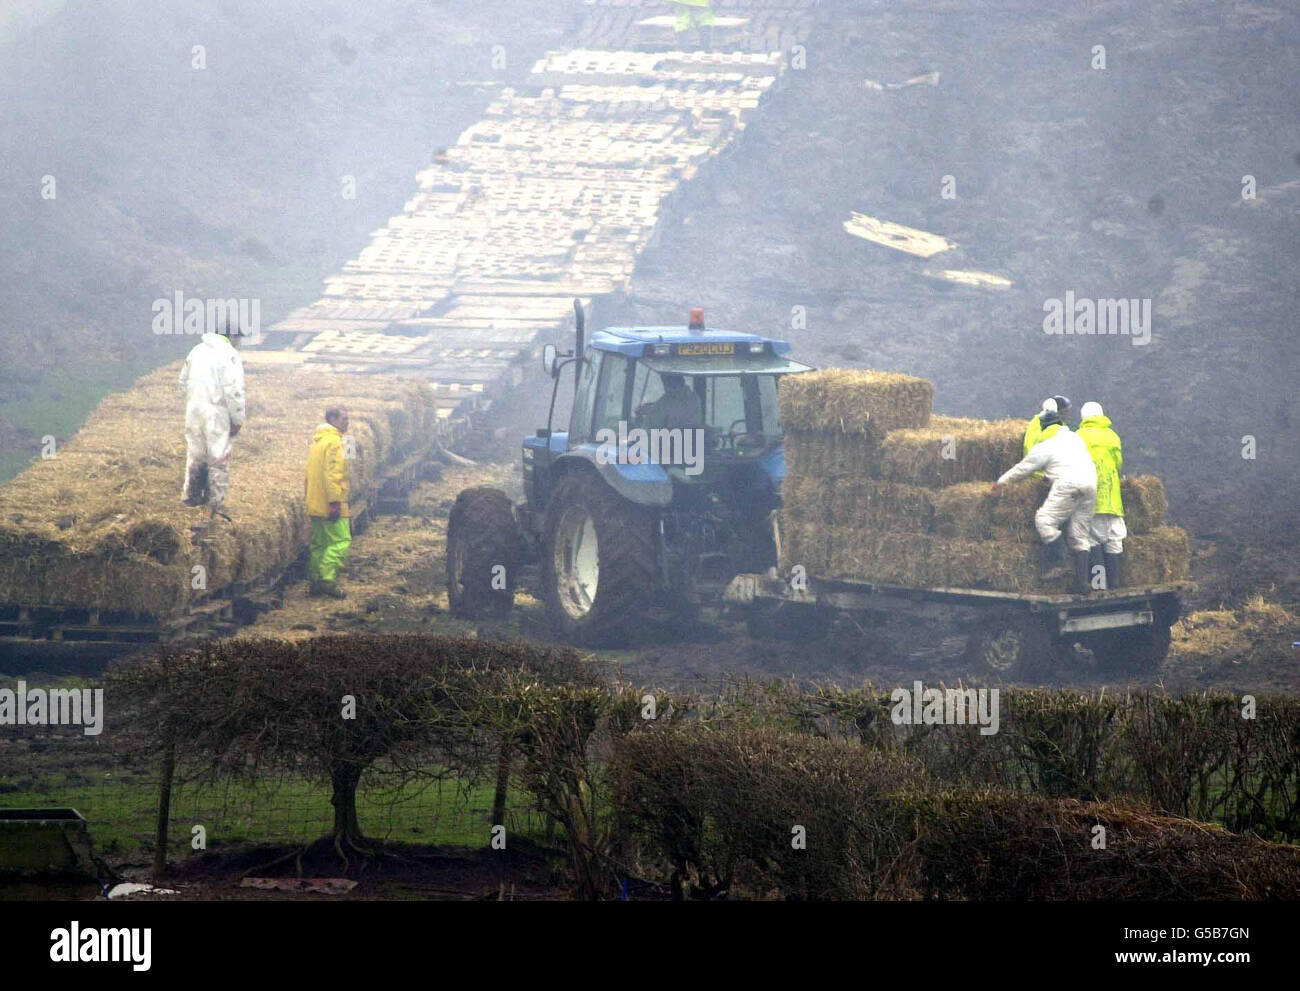 Arbeiter bereiten den Scheiterhaufen auf der Nibley Mill Farm in Blakeney, Gloucestershire, vor. Tausende von Tieren wurden in einem der größten Scheiterhaufen verbrannt, die bisher im Südwesten Englands gesehen wurden. * Es umfasst eine Fläche von etwa zwei Fußballfeldern und hat das ganze Tal am Fluss Severn mit einer Rauchwolke bedeckt. Stockfoto